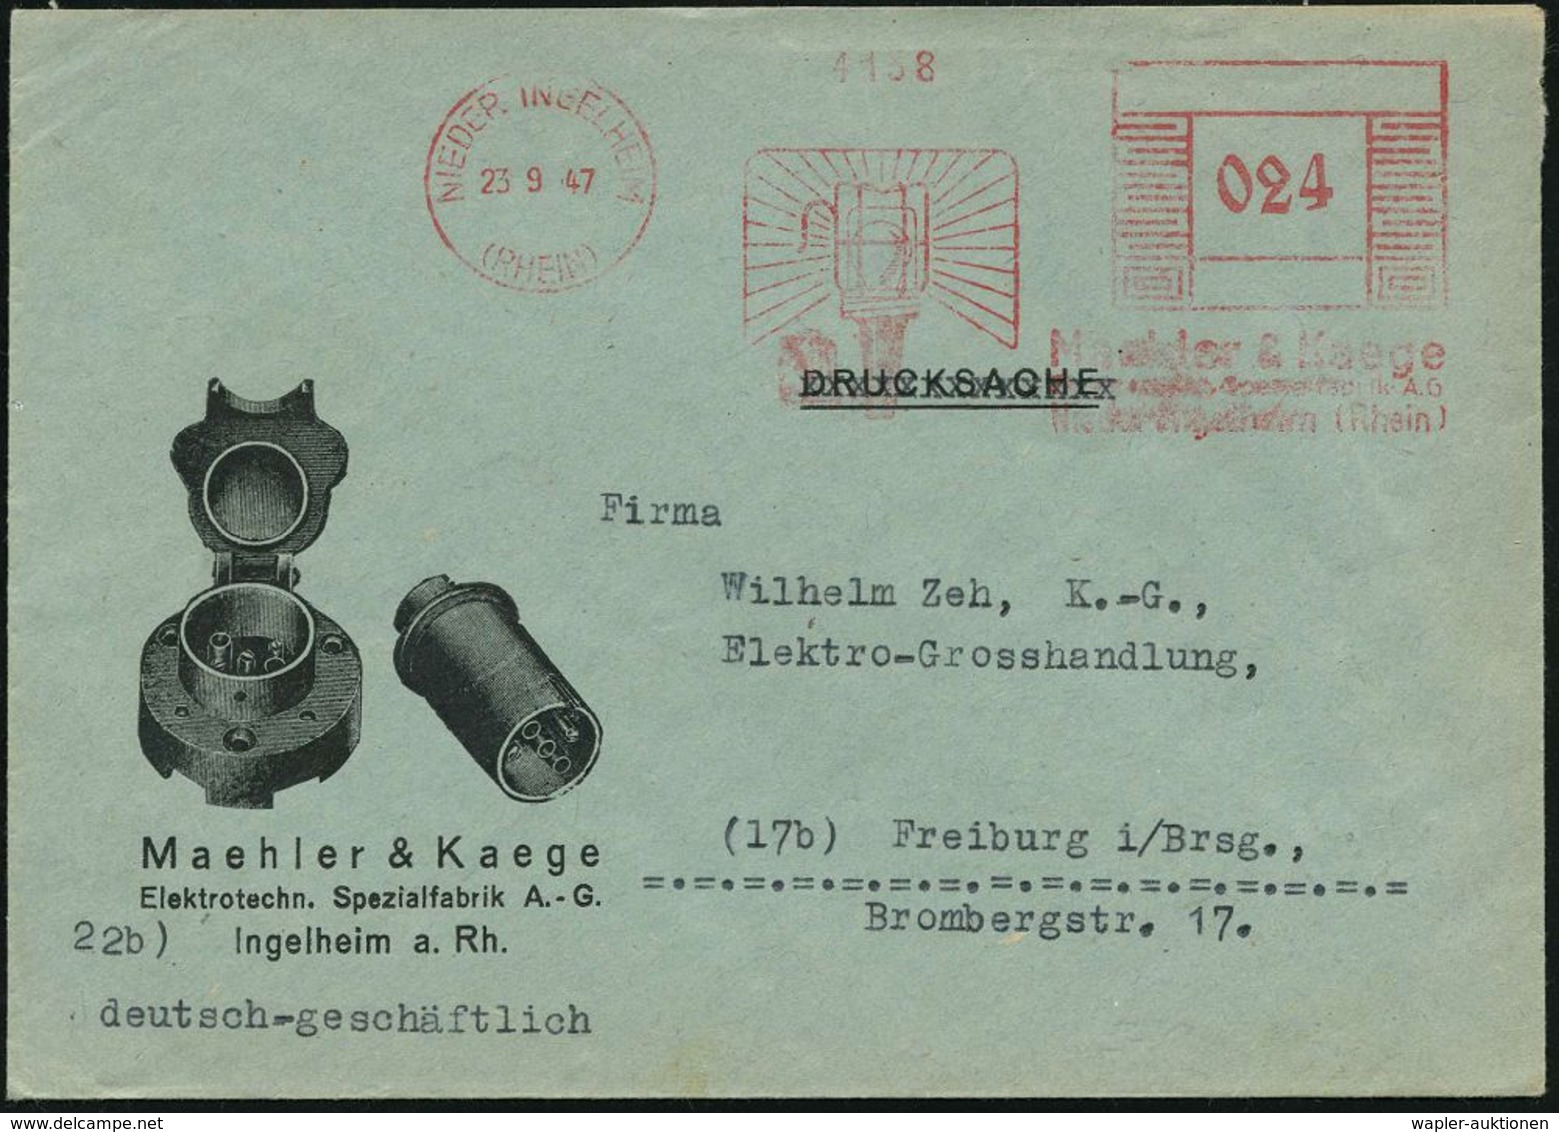 ELEKTRISCHE APPARATE & MASCHINEN : NIEDER INGELHEIM/ (RHEIN)/ Maehler & Kaege.. 1947 (23.9.) Aptierter AFS "Mäanderrecht - Elettricità